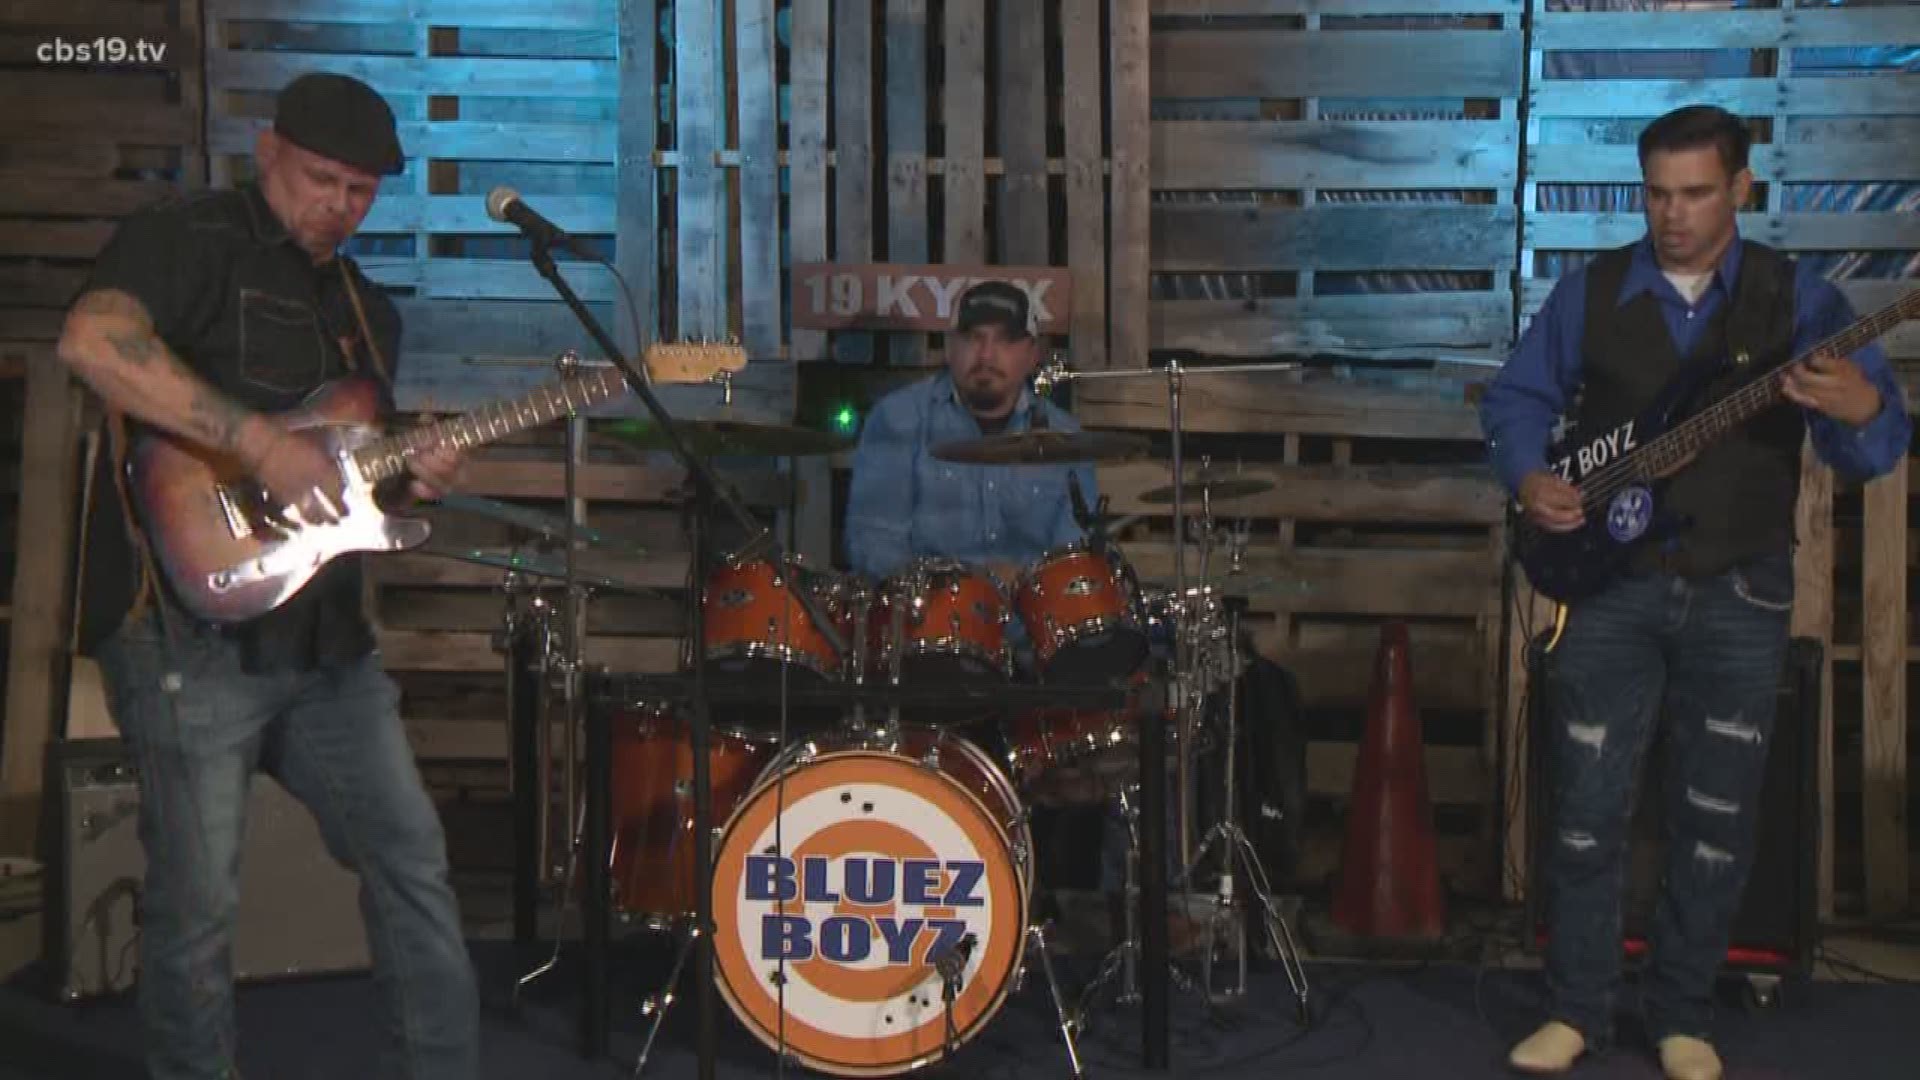 On the CBS19 stage, Bluez Boyz!